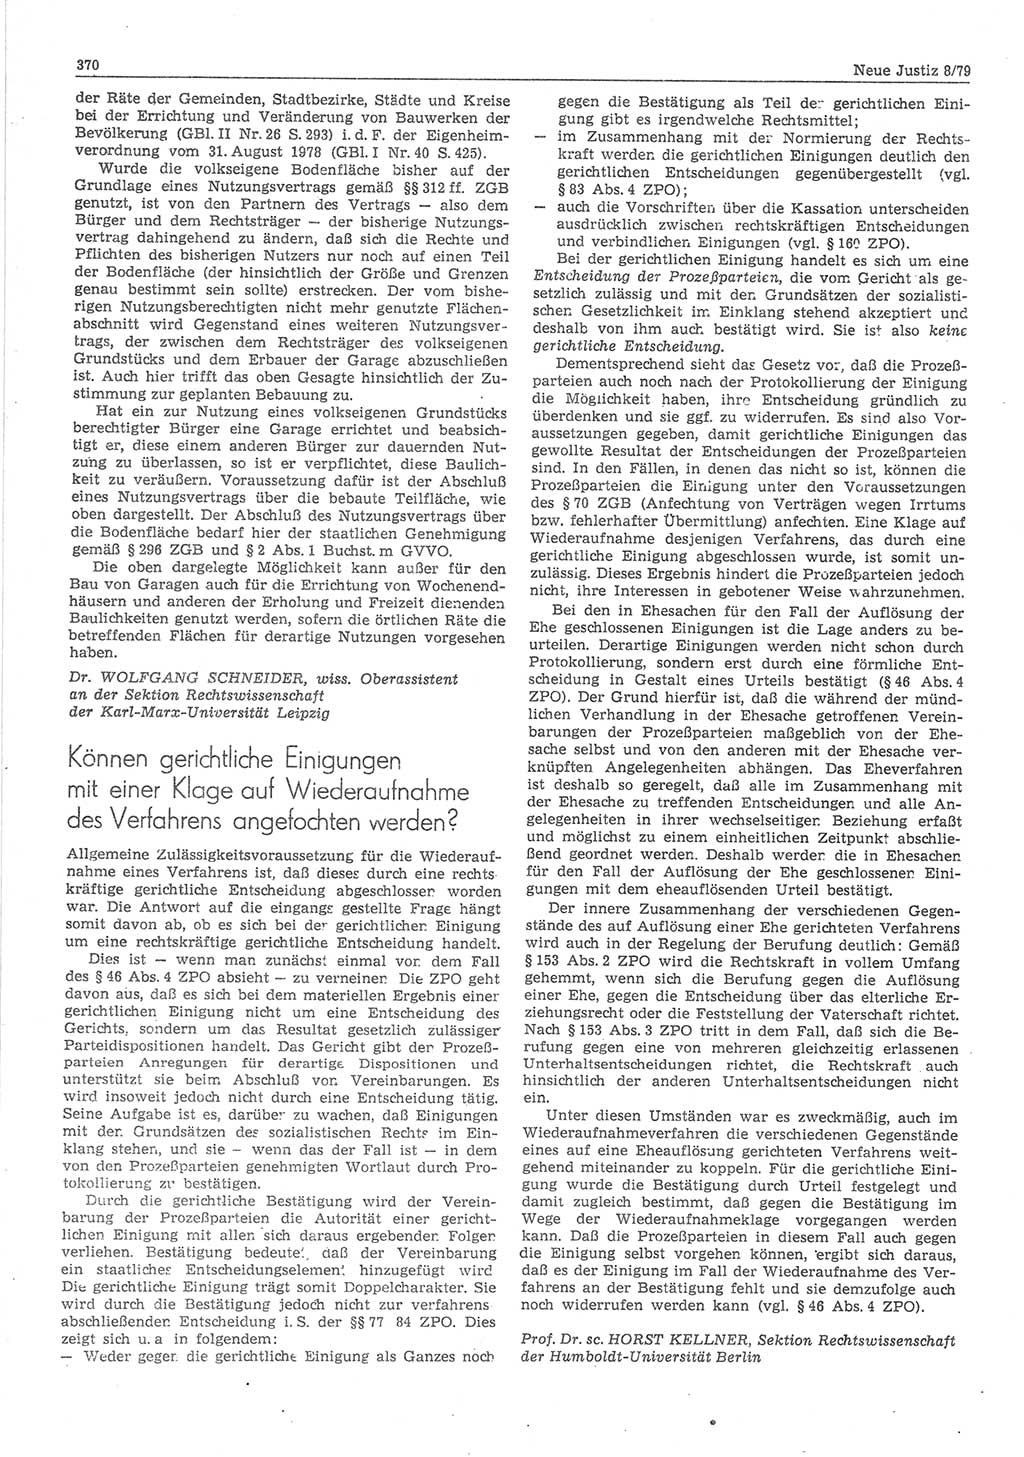 Neue Justiz (NJ), Zeitschrift für sozialistisches Recht und Gesetzlichkeit [Deutsche Demokratische Republik (DDR)], 33. Jahrgang 1979, Seite 370 (NJ DDR 1979, S. 370)